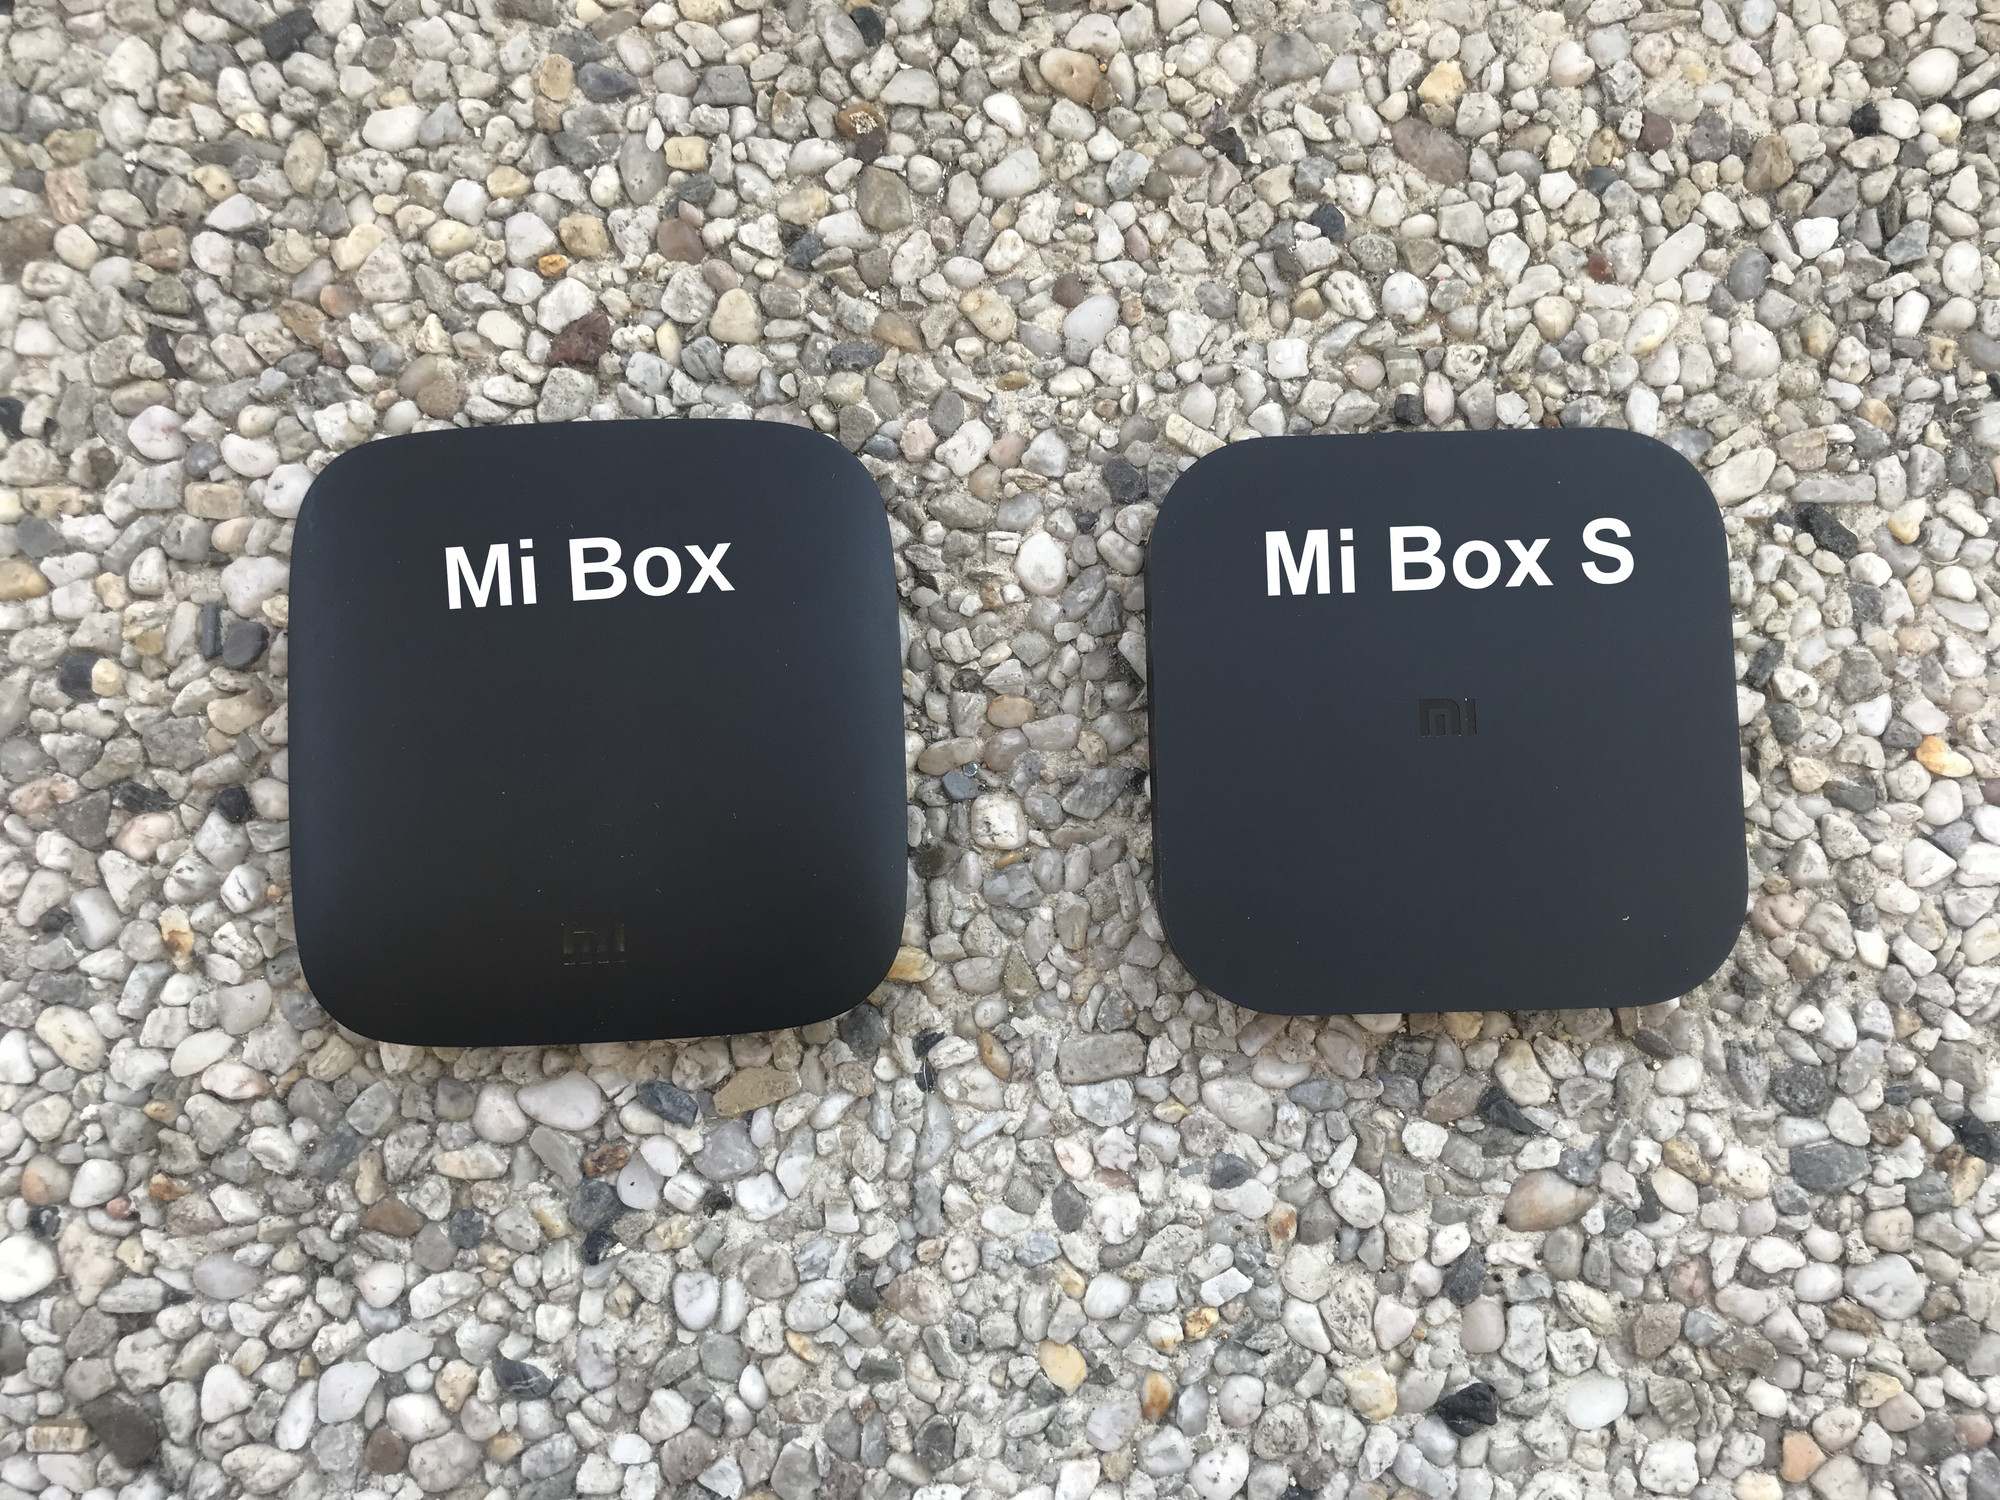 Xiaomi Mi Box vs Xiaomi Mi Box S